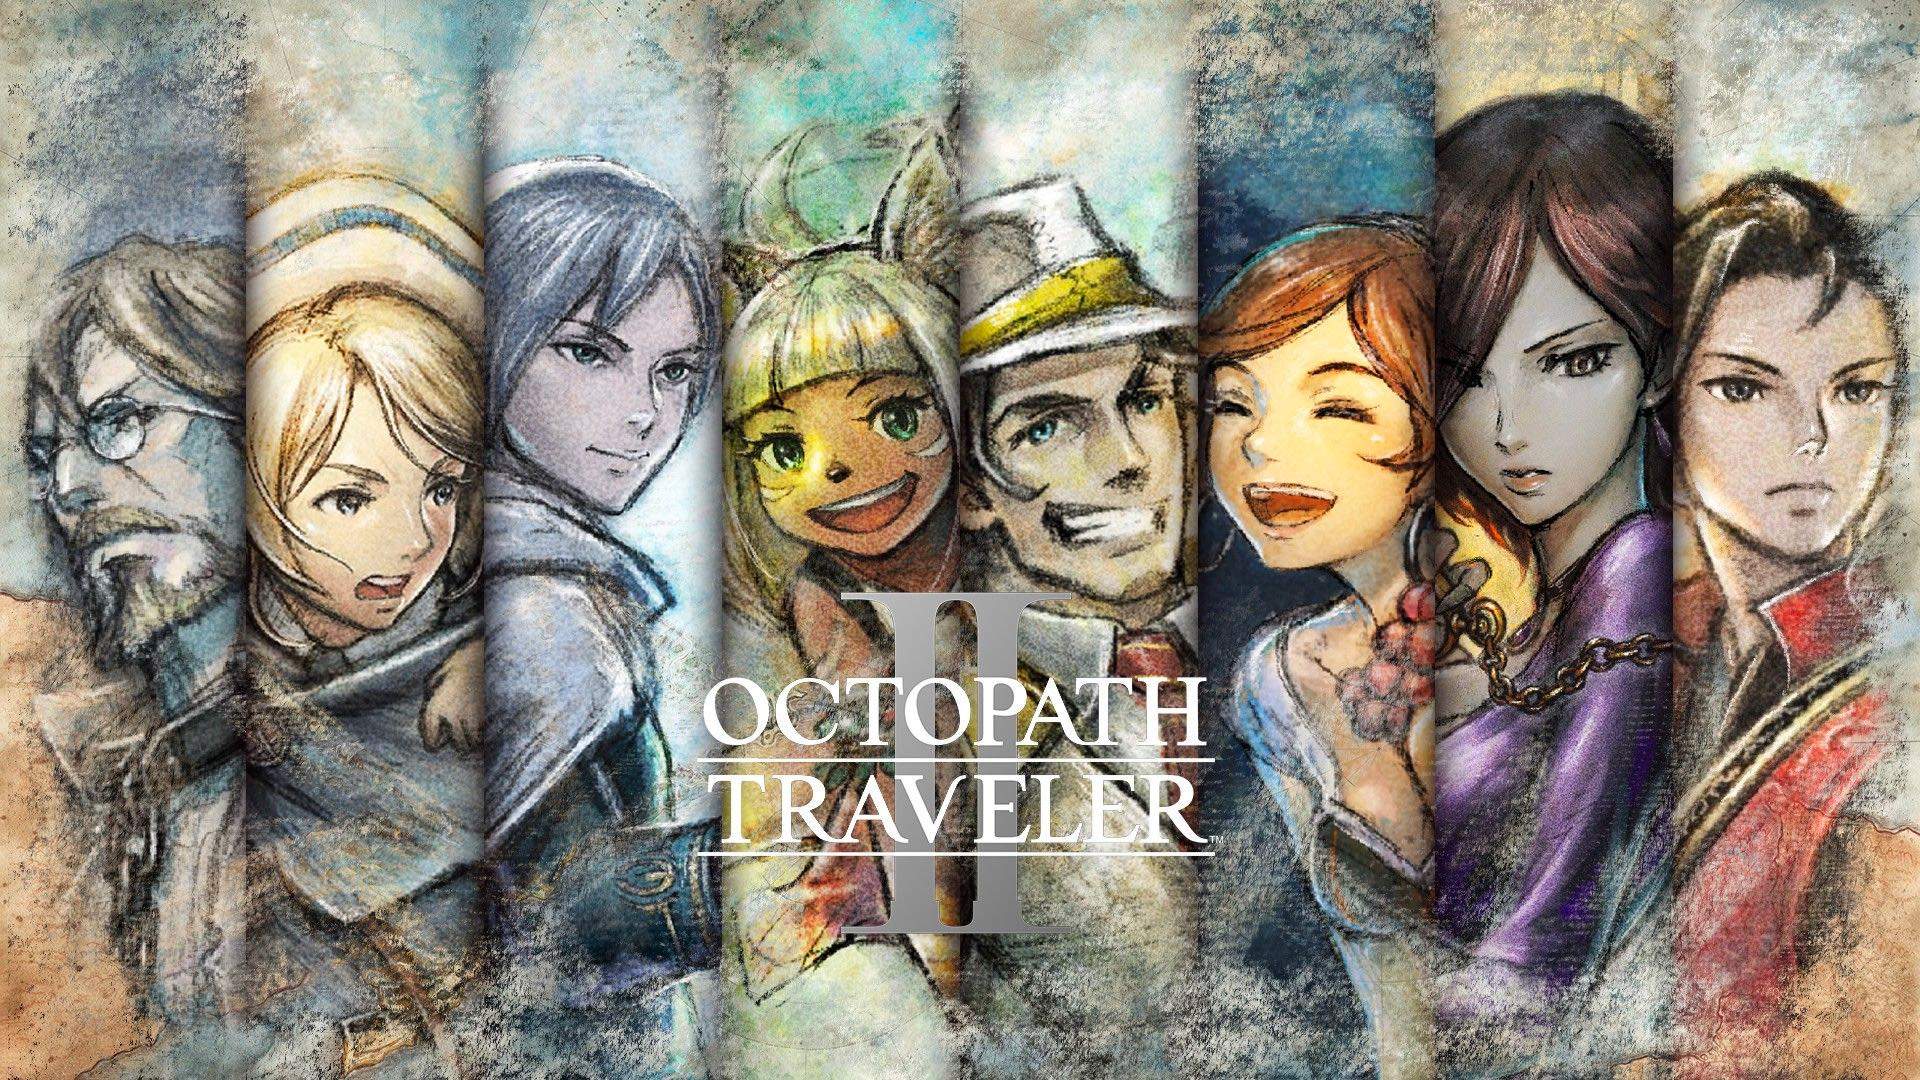 Les huit personnages du jeu derrière les logos d'Octopath Traveler II et des plateformes